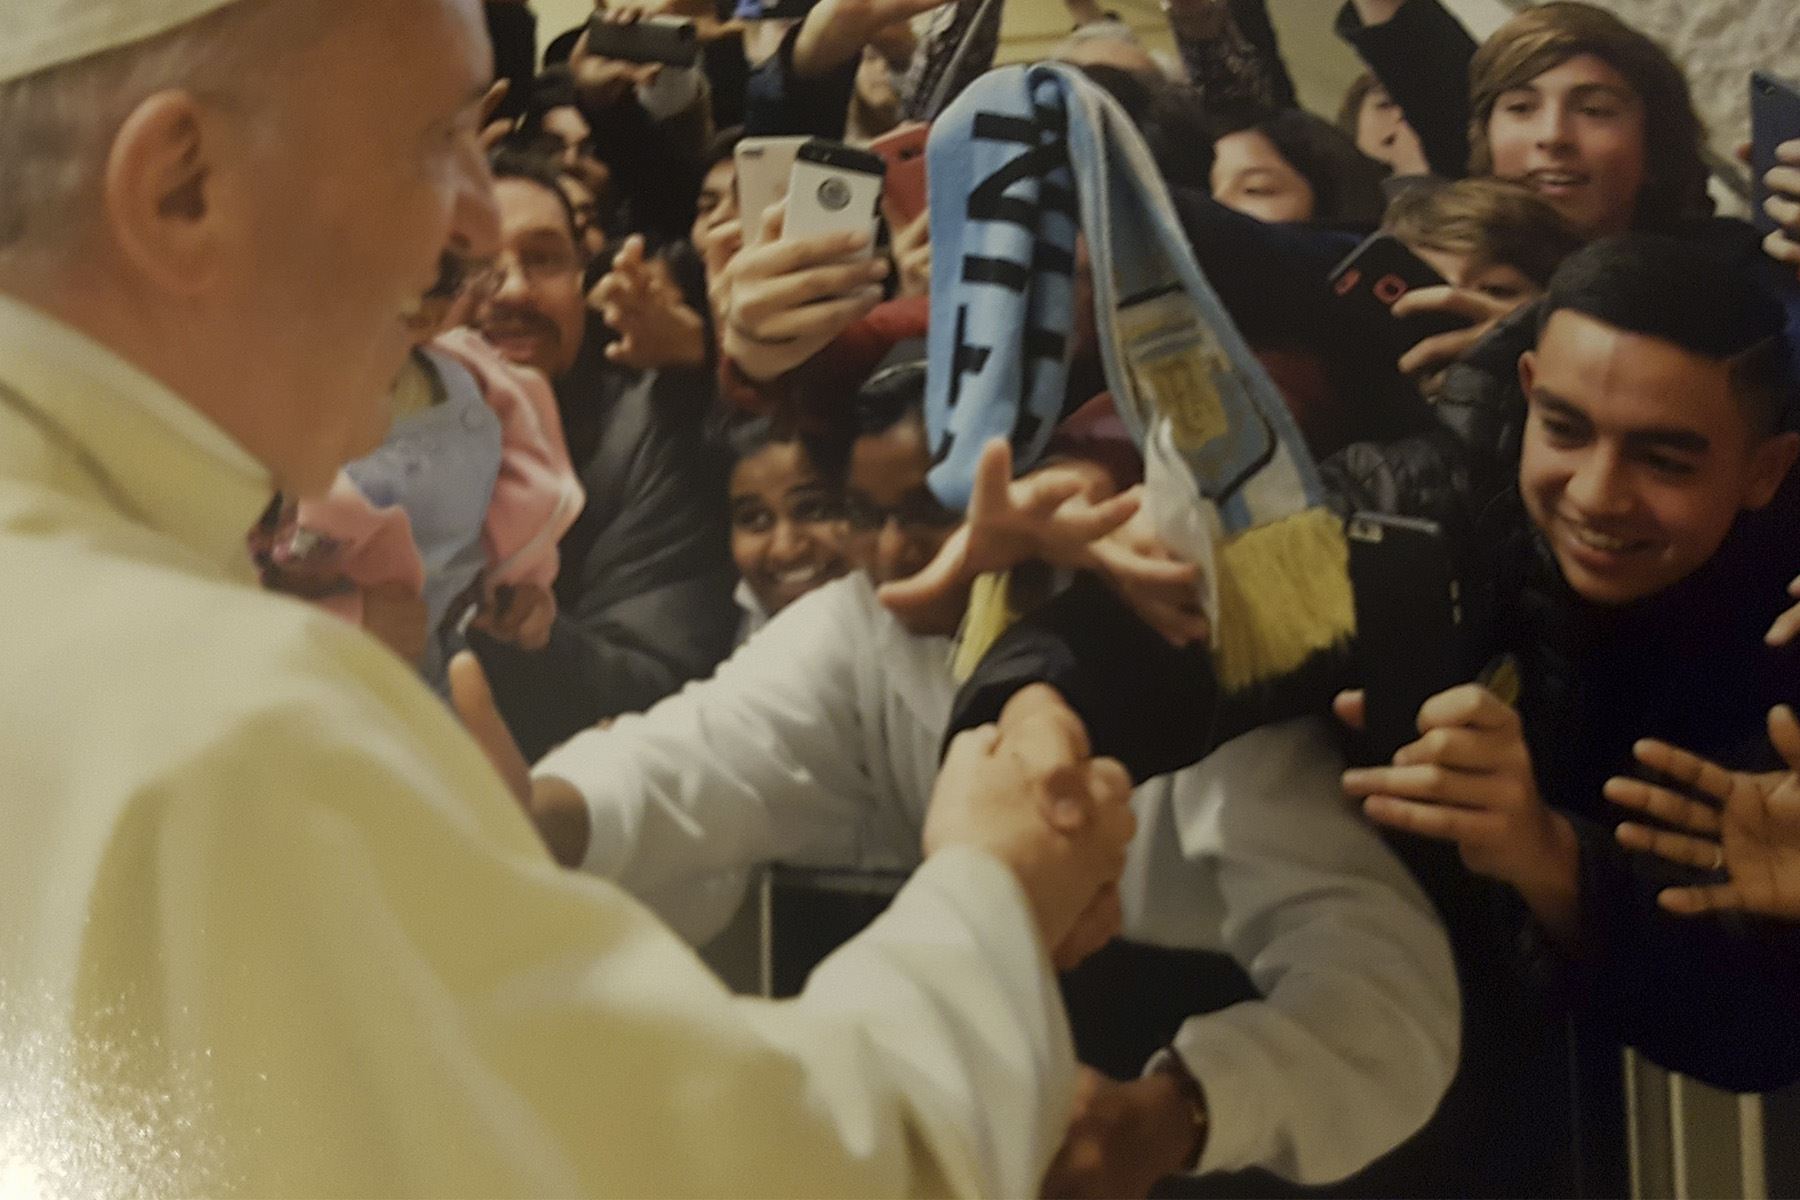 El joven peruano Ignacio Urquiaga Vanderghem visitó Italia y pudo acercarse al Santo Padre. No dudó en obsequiarle la camiseta bicolor, que el Papa Francisco aceptó y agradeció.  Foto: Ignacio Urquiaga/Facebook